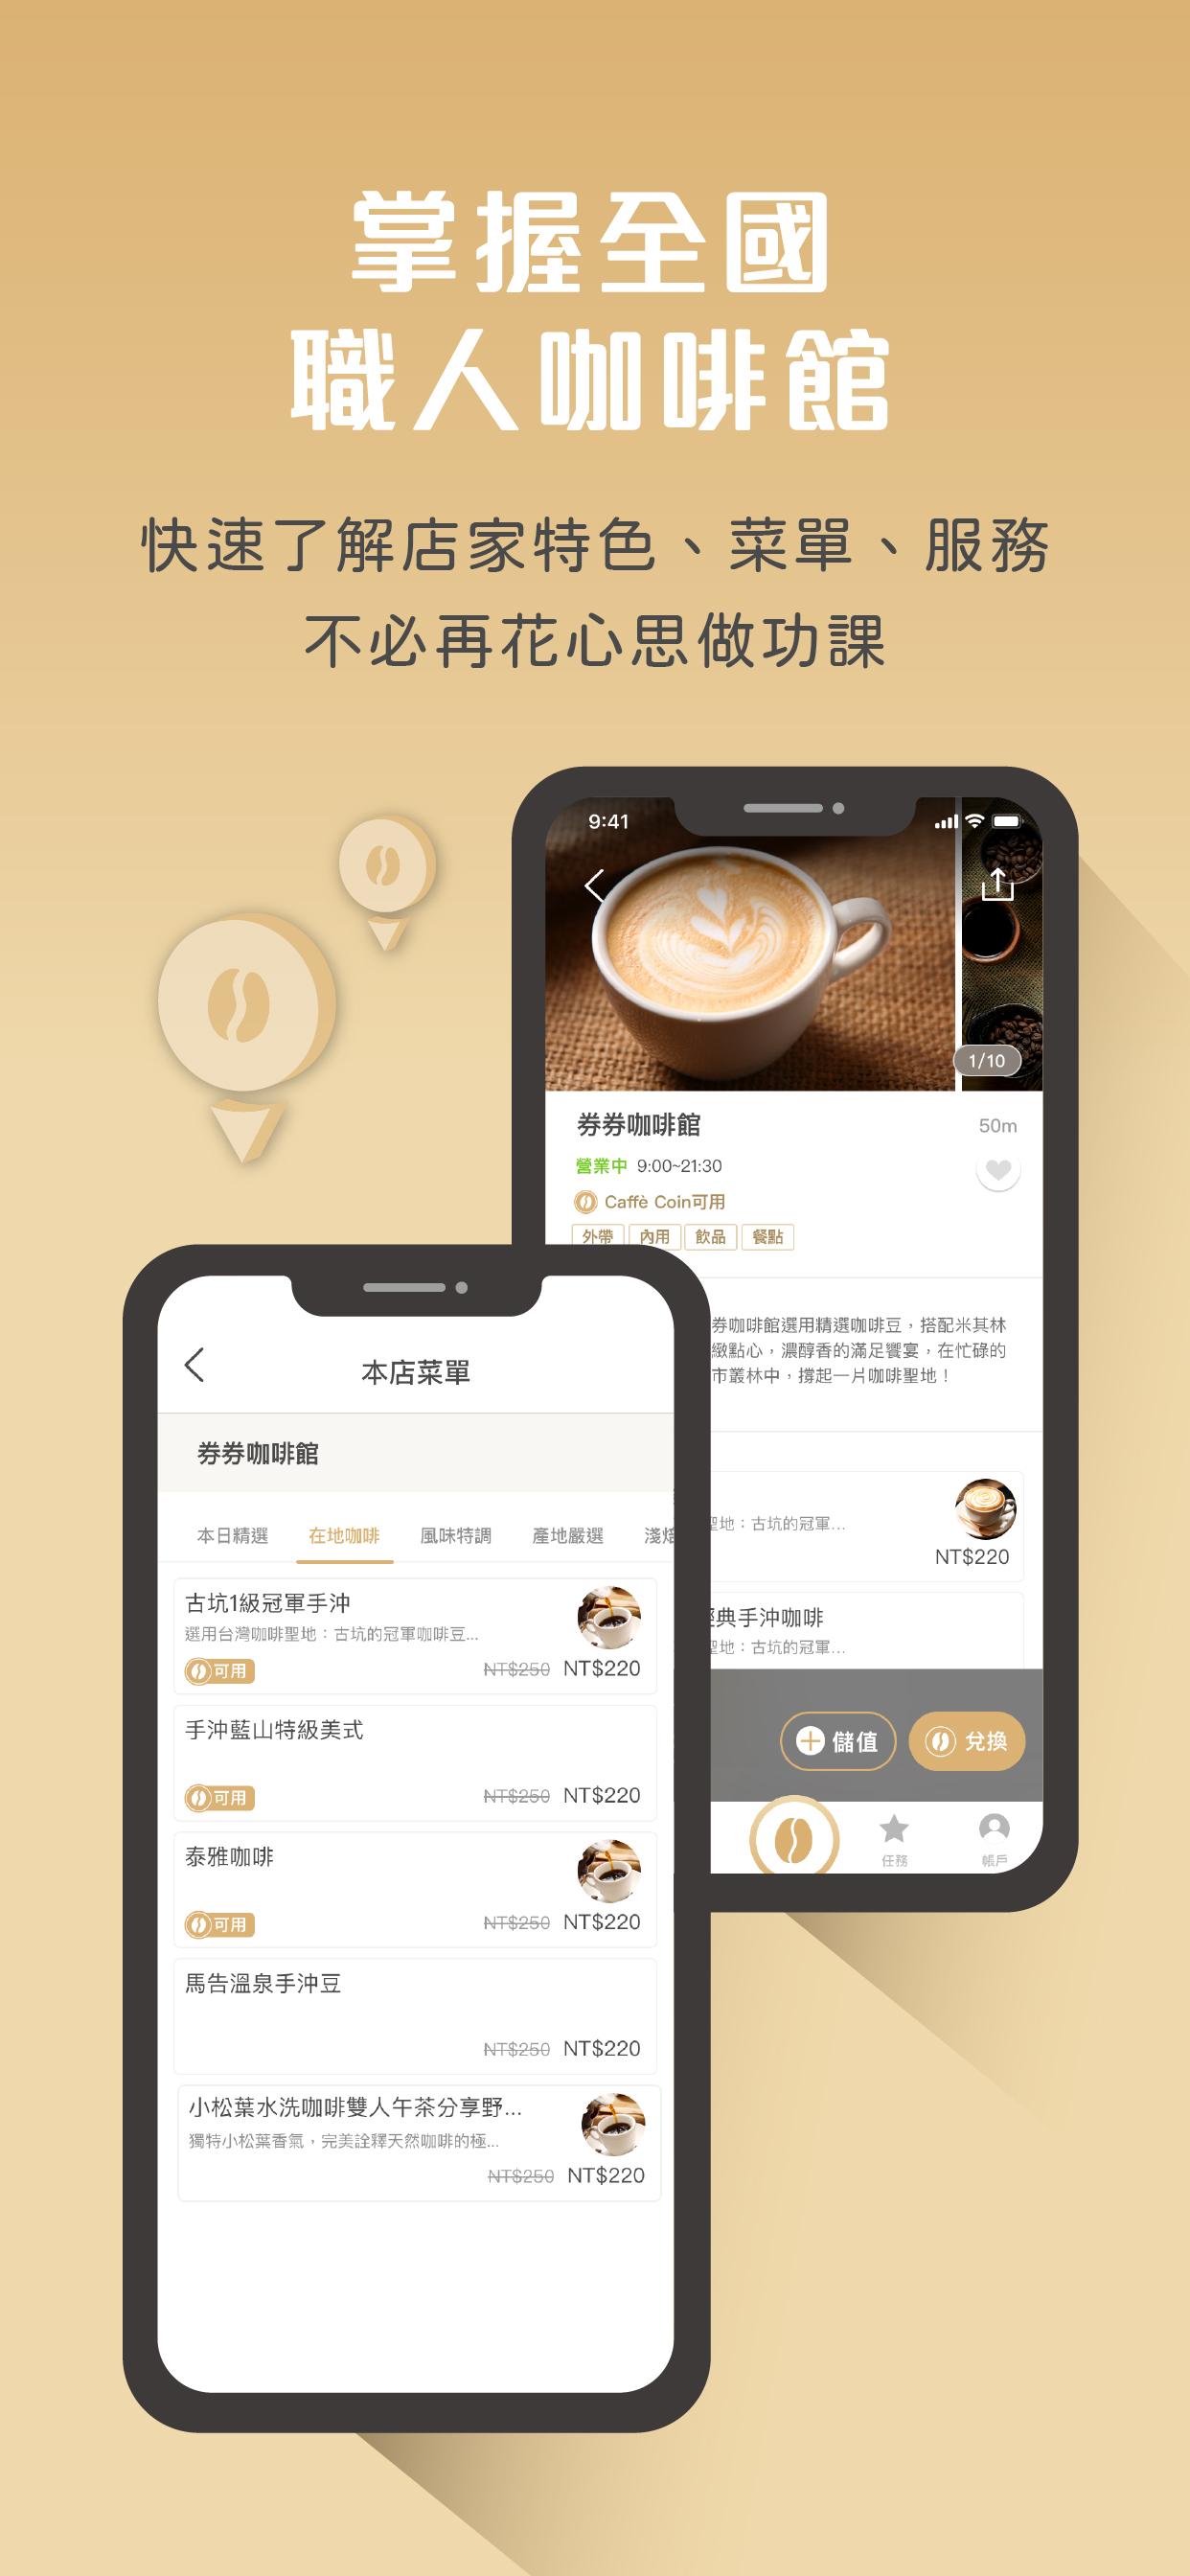 CAFFECOIN 職人咖啡通行 1.0.3 Screenshot 4